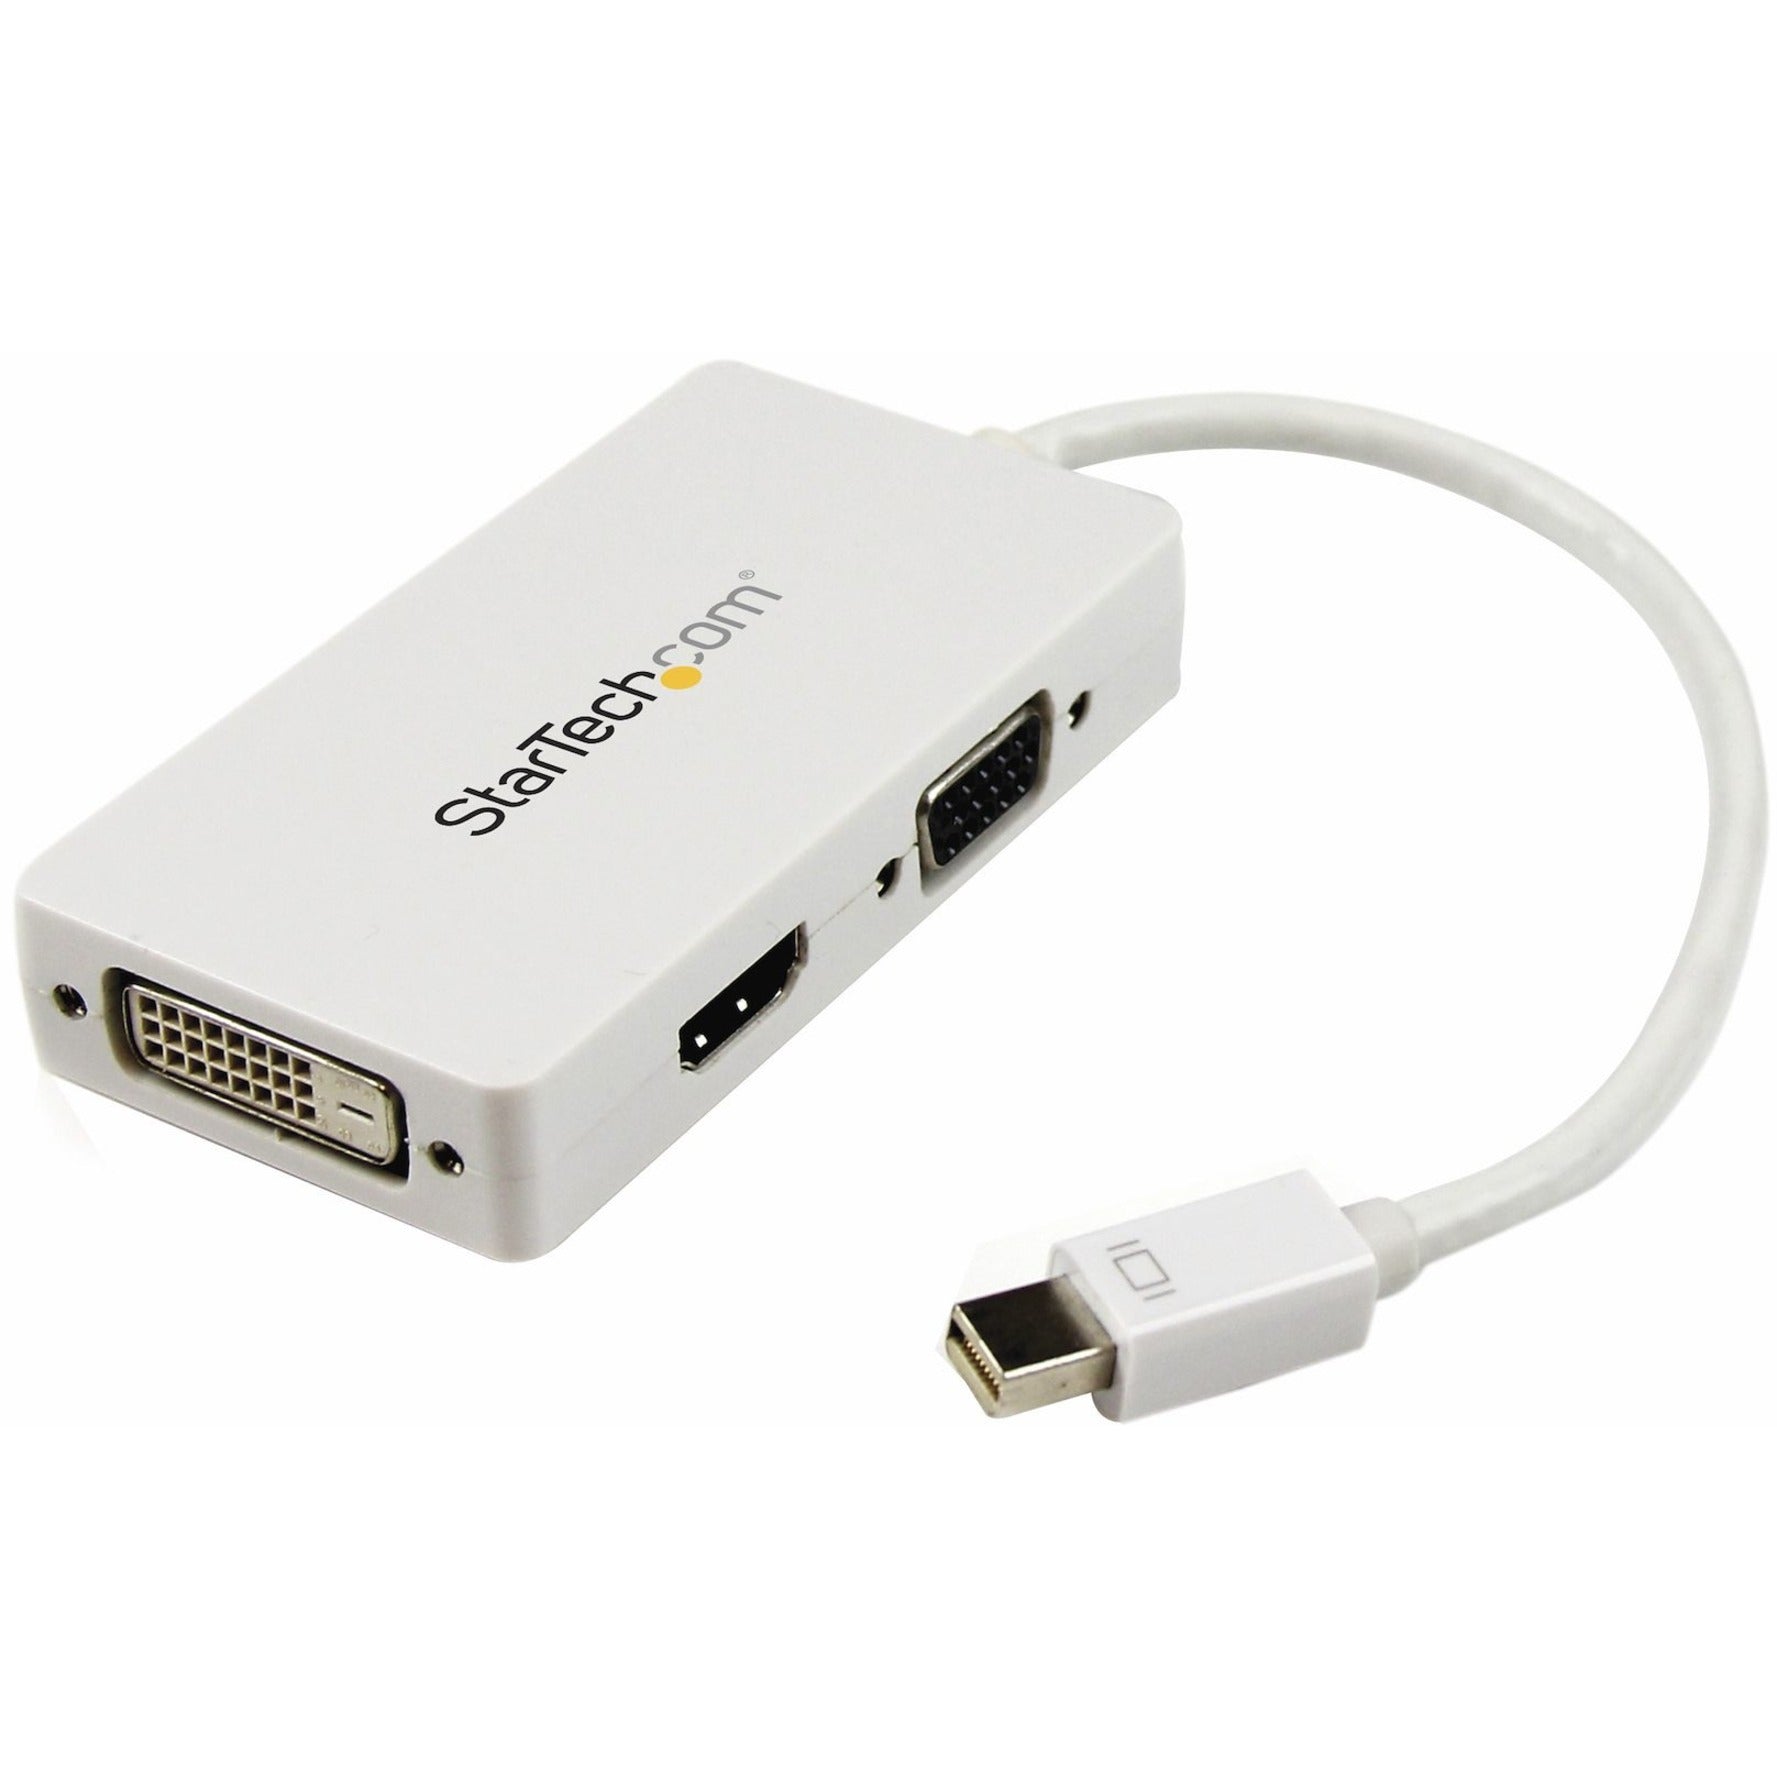 StarTech.com MDP2VGDVHDW سفر A/V محول: 3 في 1 مصغرة DisplayPort إلى VGA DVI أو HDMI محول، أبيض